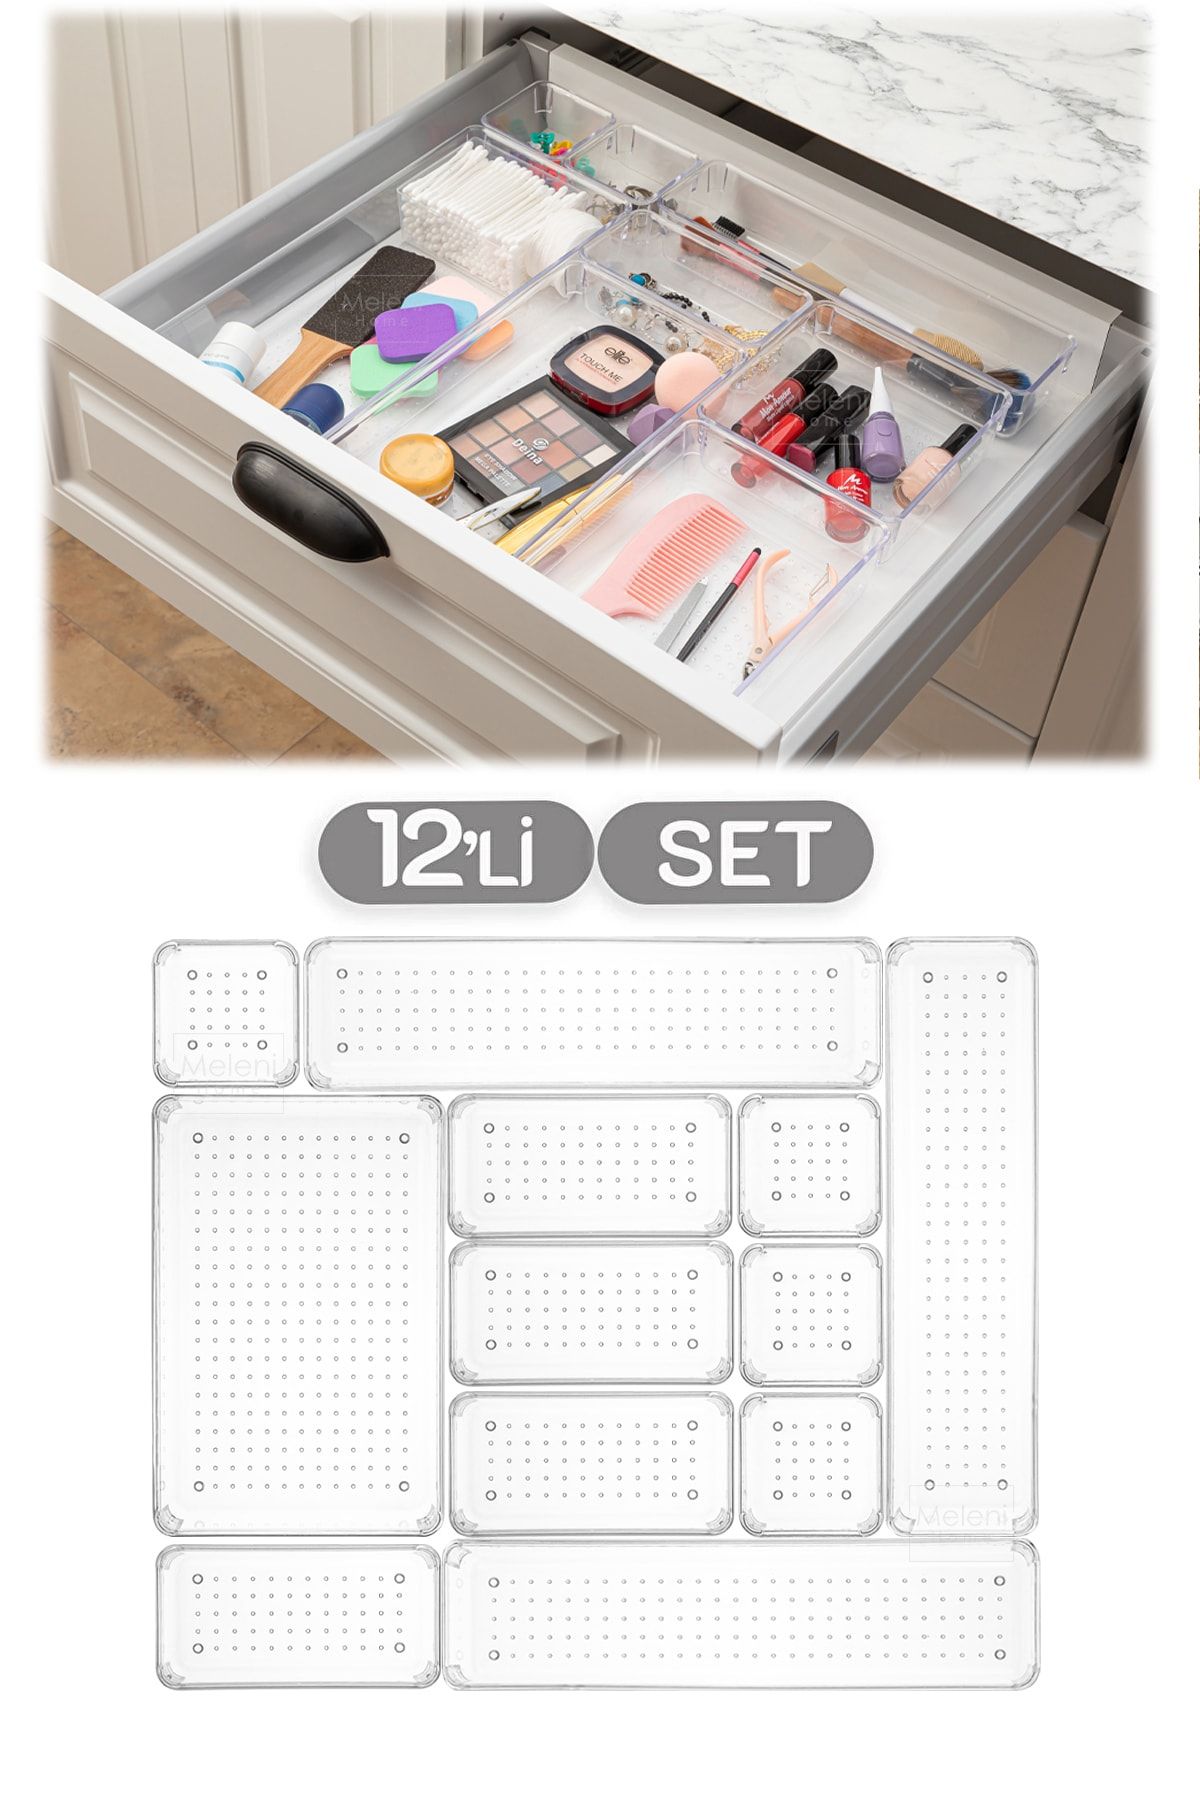 Meleni Home Set mit 12 modularen Schubladen-Organizern, Badezimmer-Make-up – Schmuck-Organizer – Büro-Desktop-Organizer